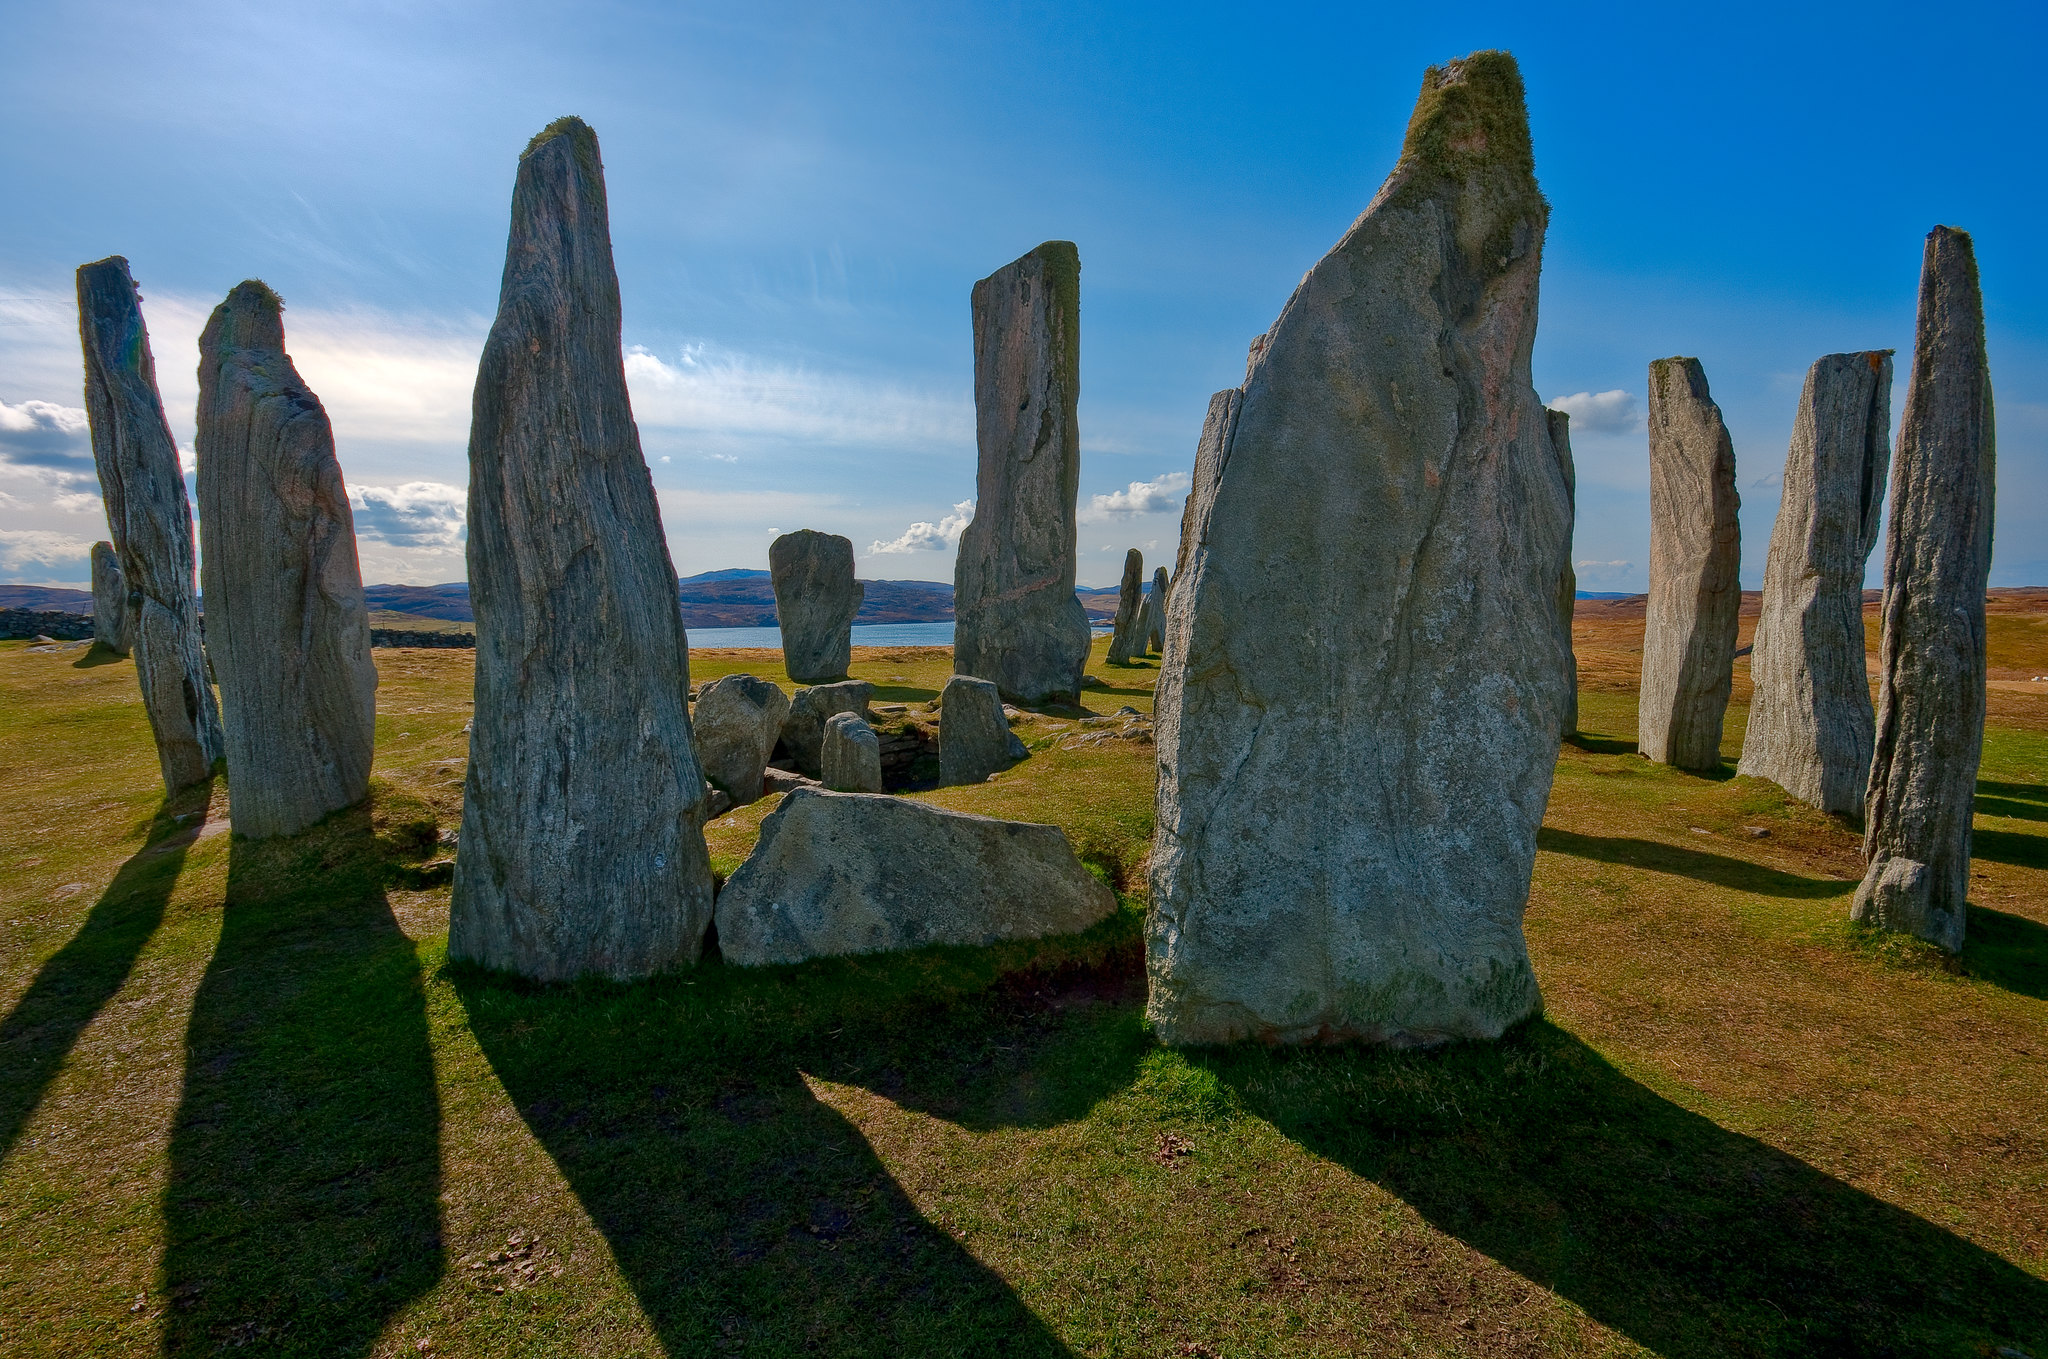 Идол 7 букв. Камни Калланиш остров Льюис Шотландия. Внешние Гебридские острова Шотландии. Гебриды острова Шотландия. Менгиры Калланиша, Шотландия.